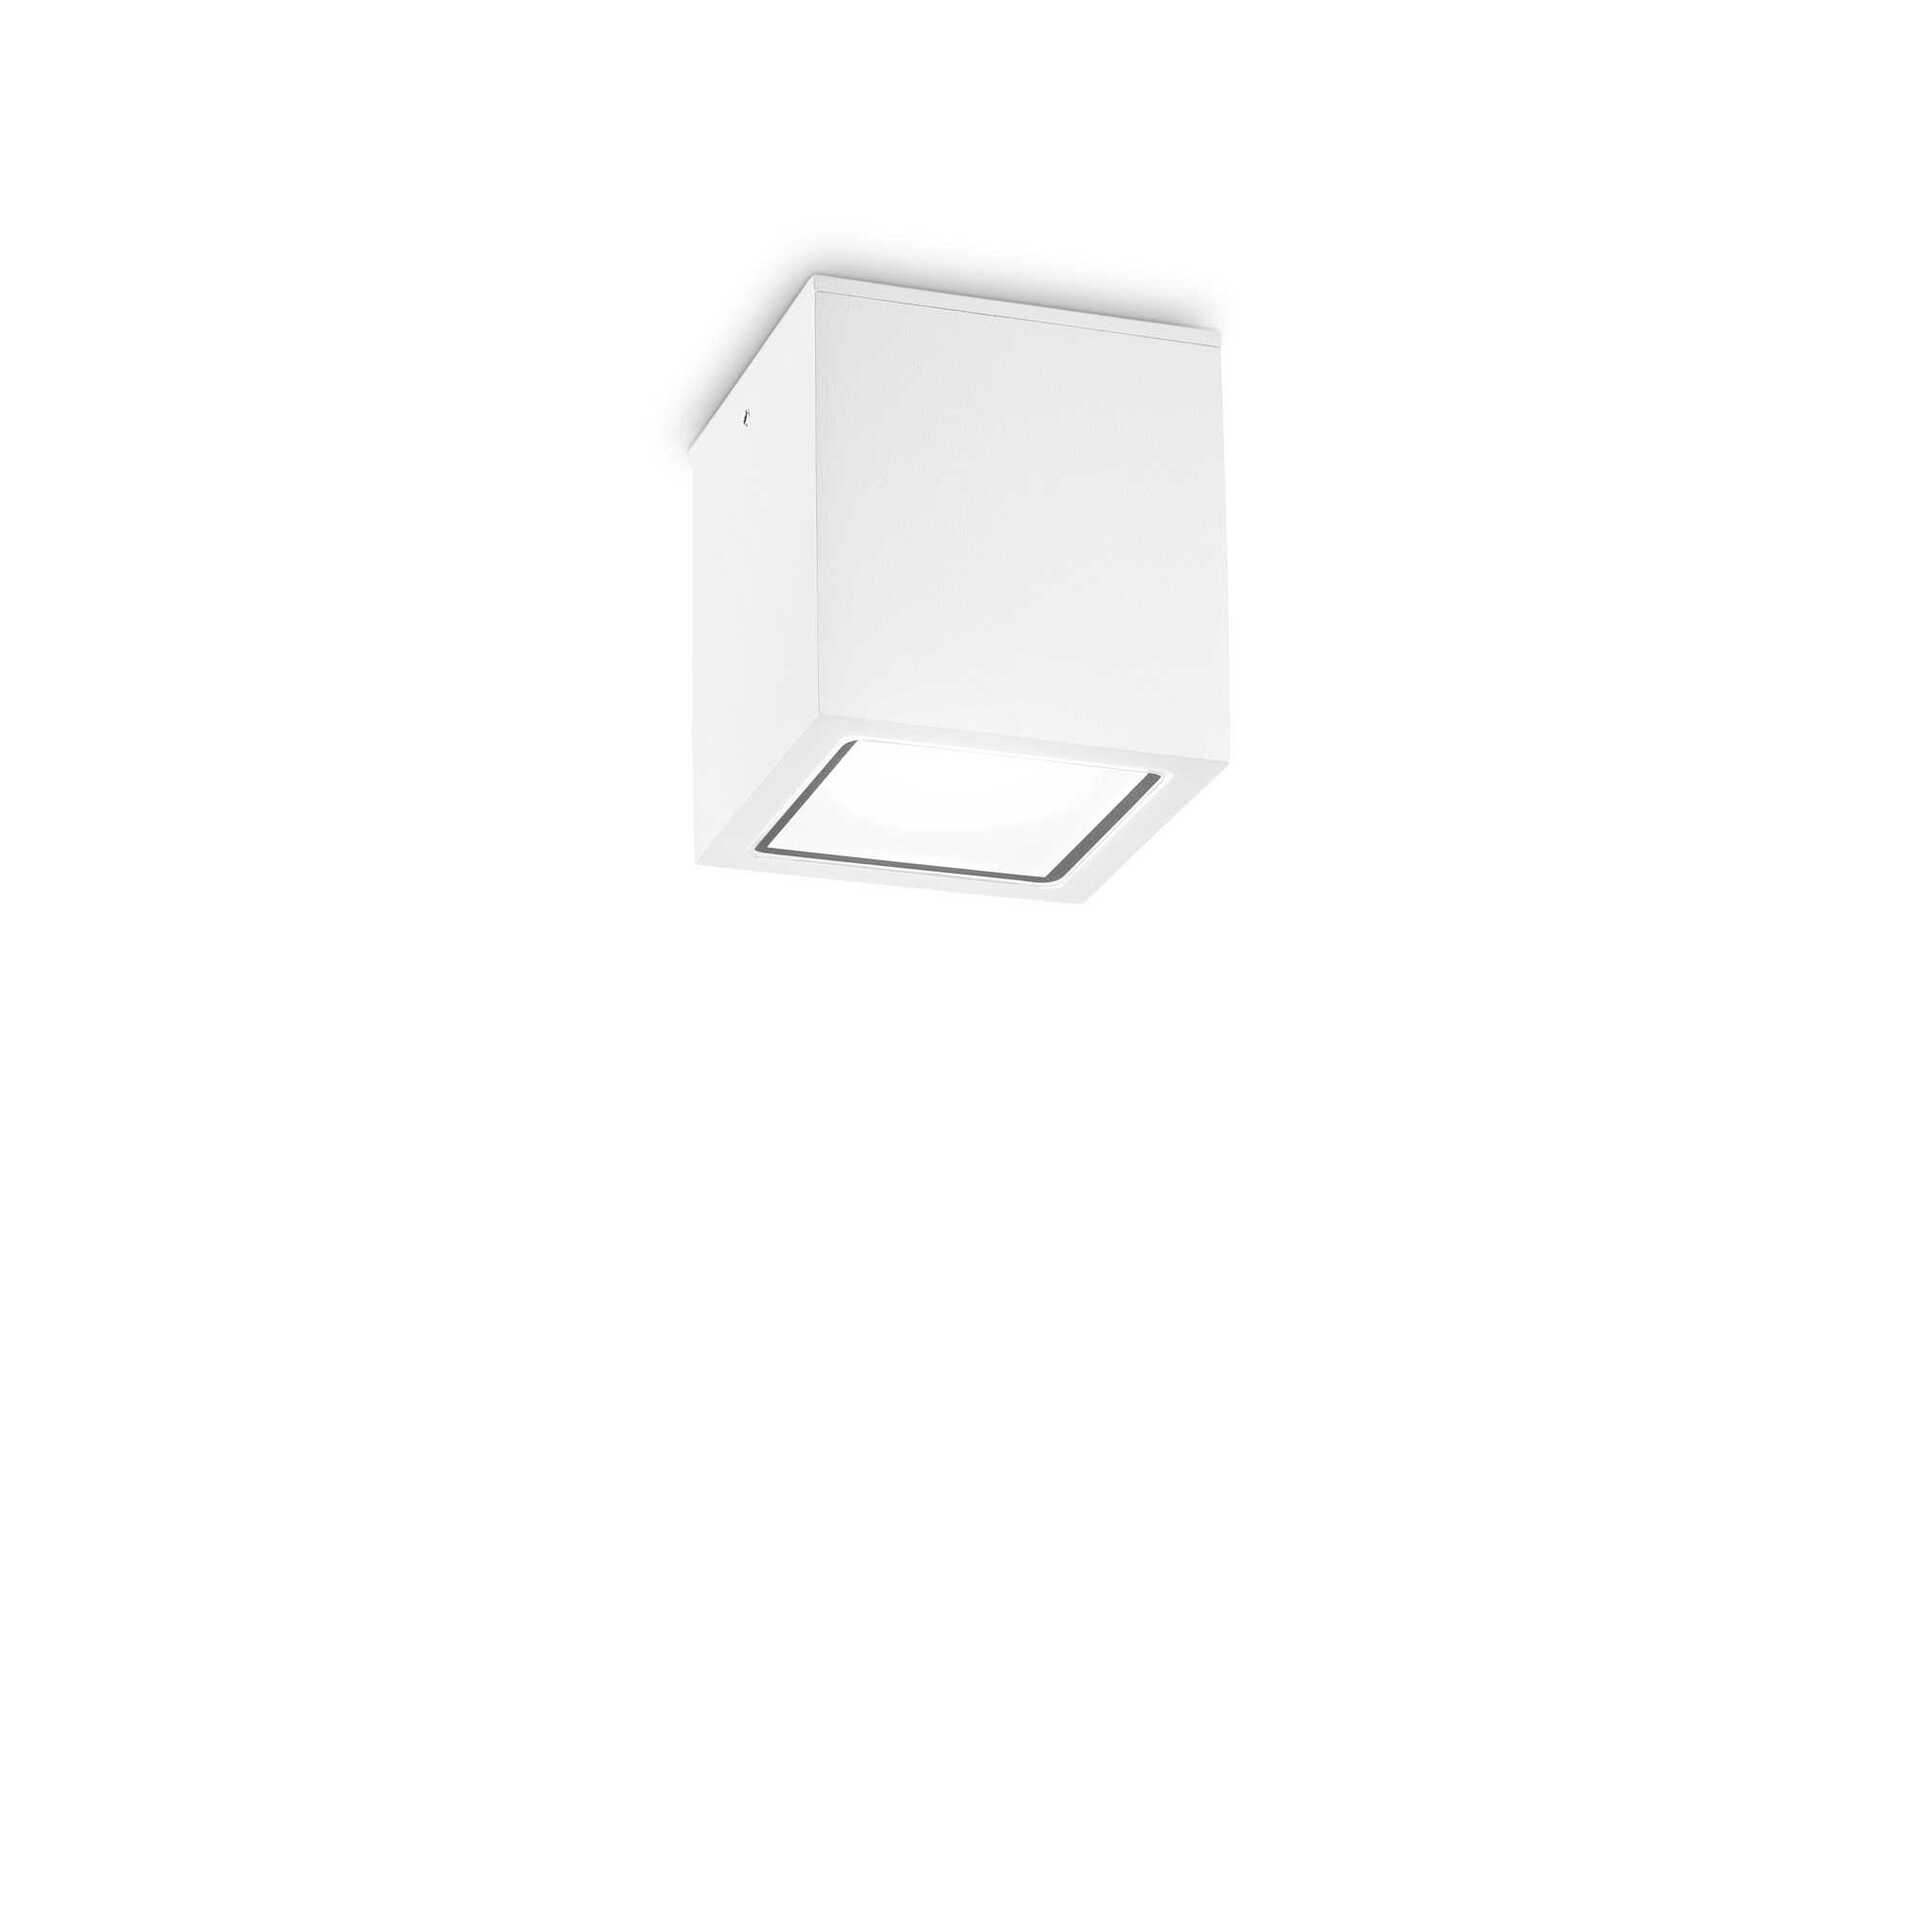 Venkovní stropní přisazené svítidlo Ideal Lux TECHO PL1 SMALL BIANCO 251561 GU10 1x20W IP54 9cm bílé